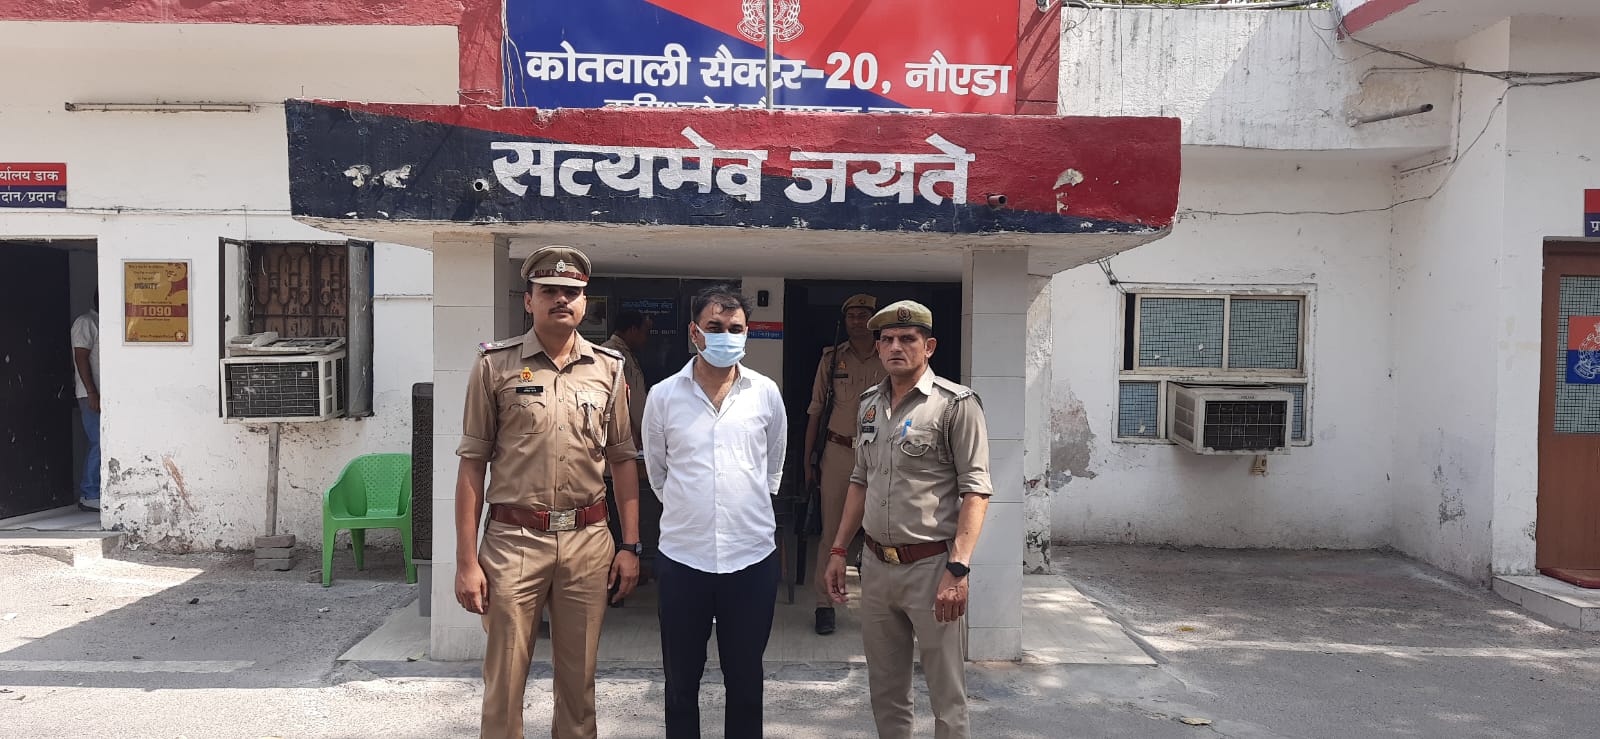 Noida News: हजारों करोड़ का जीएसटी फ्रॉड करने वाला मास्टरमाइंड गिरफ्तार